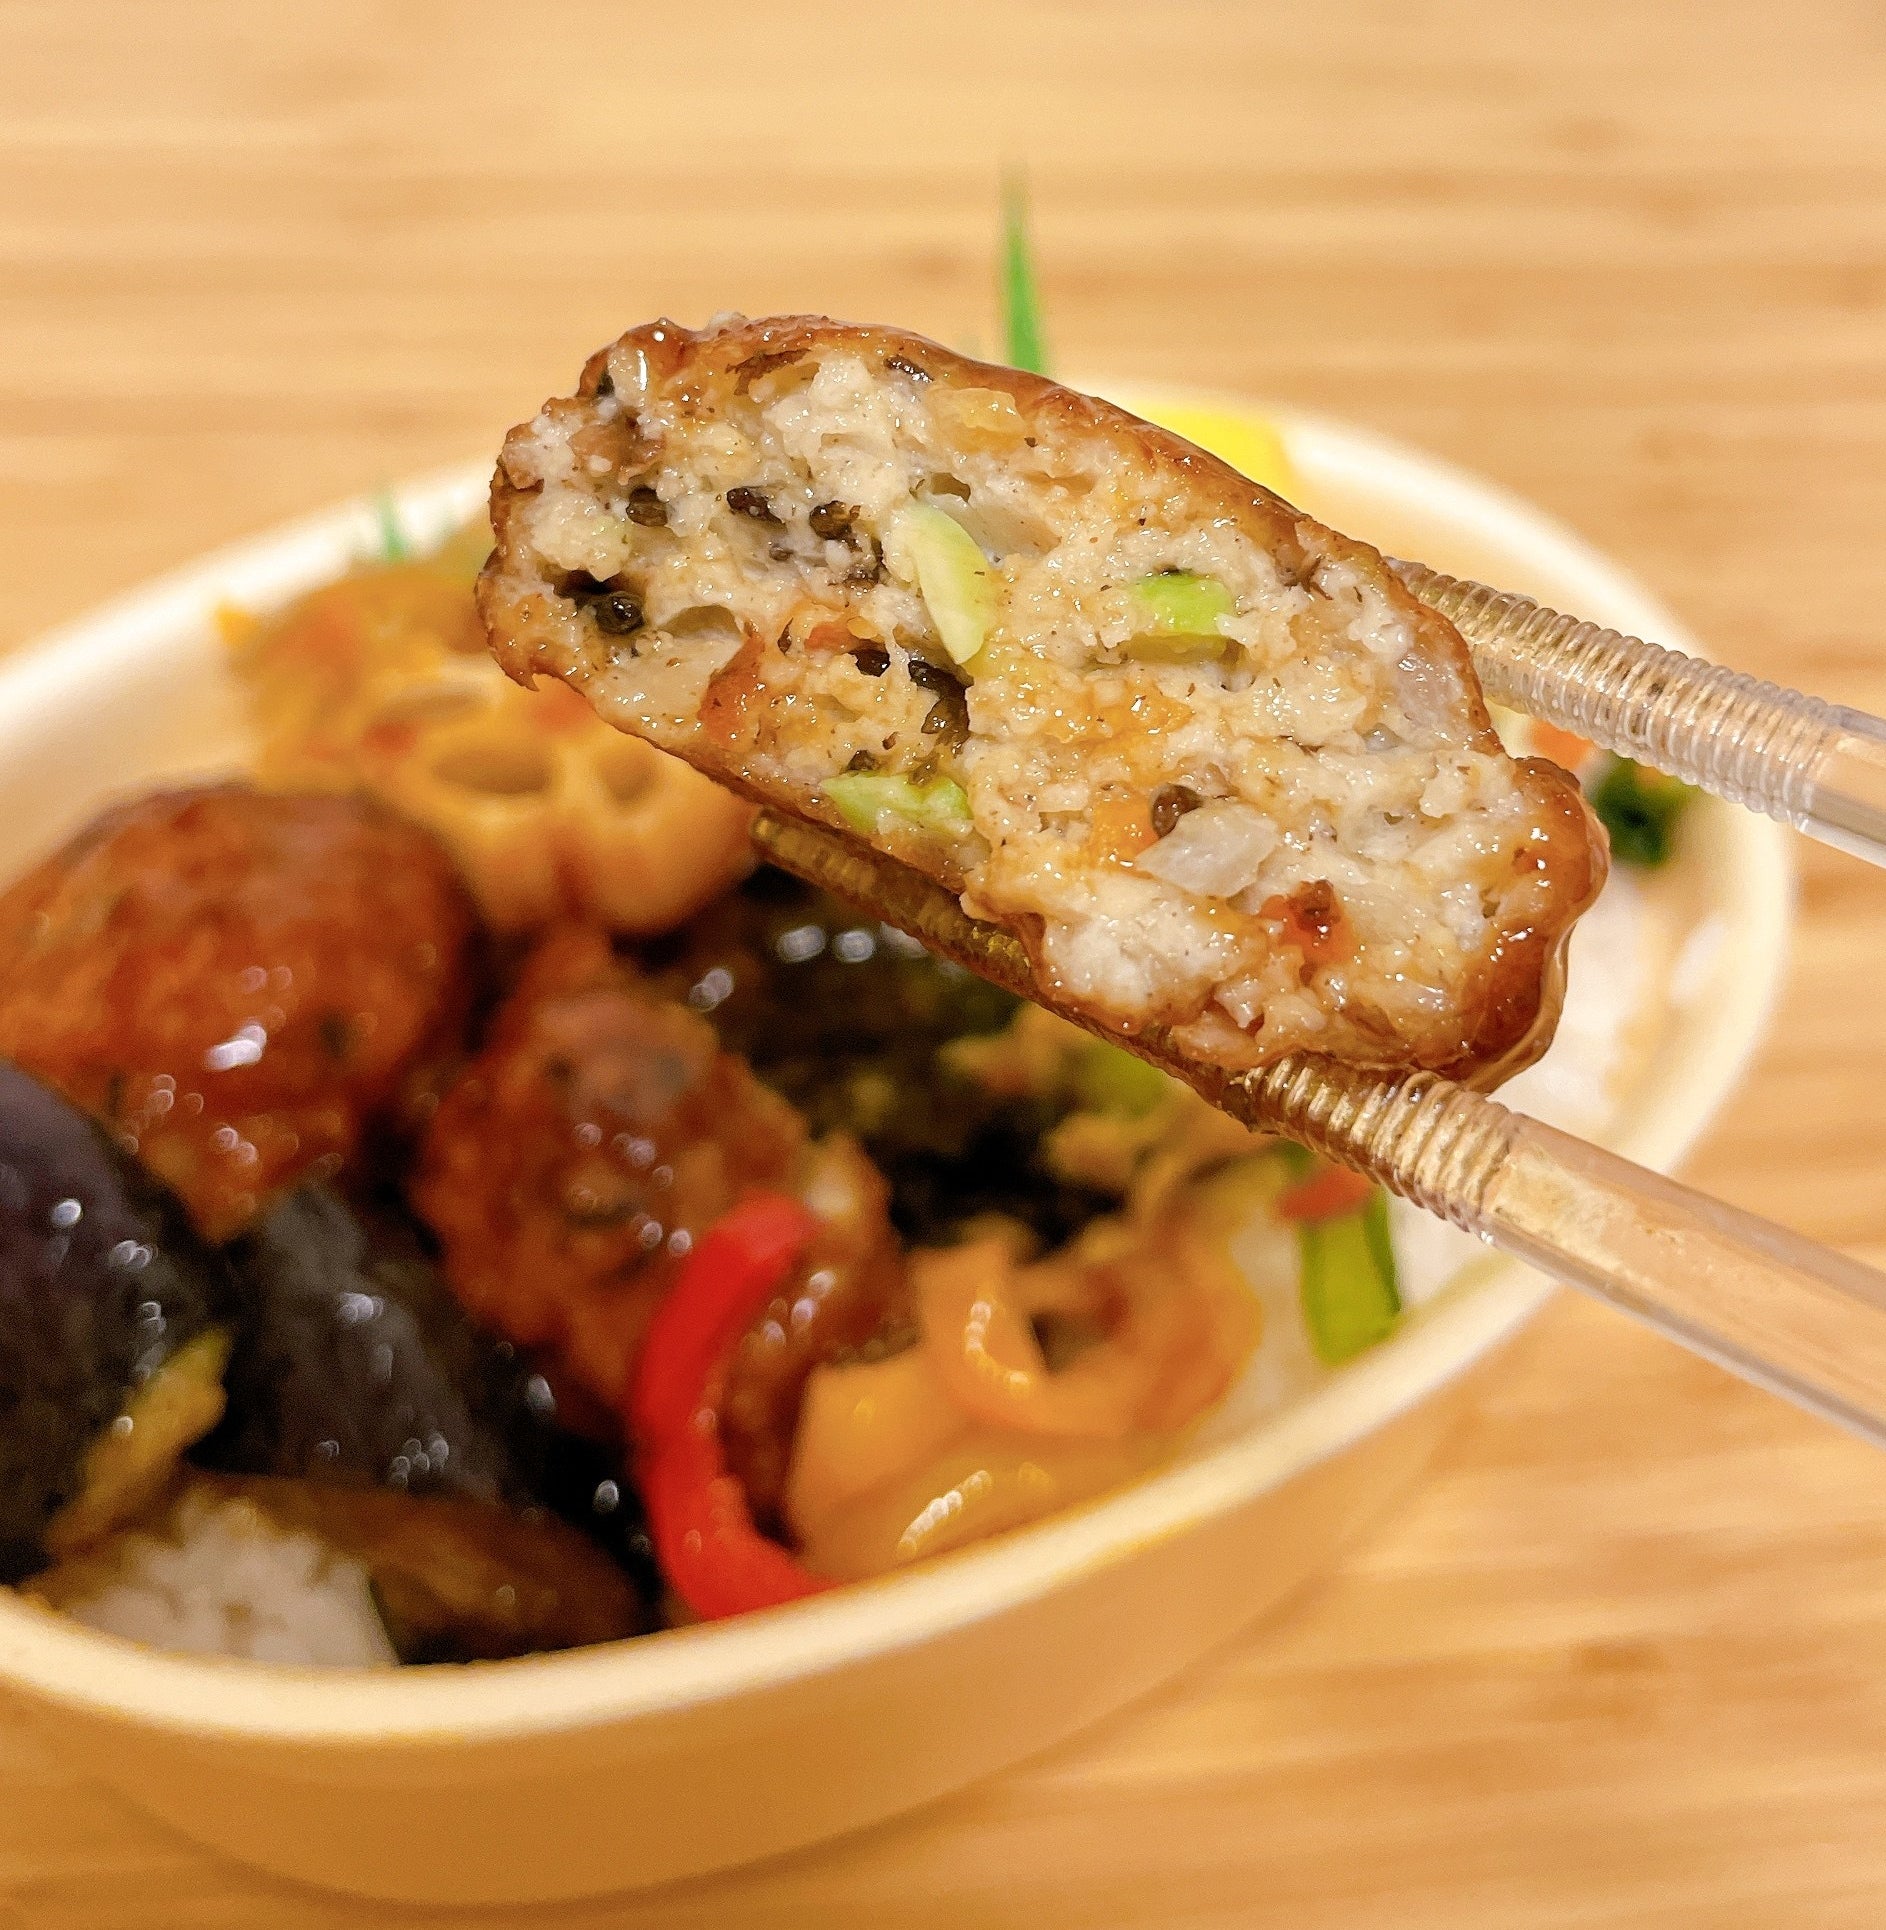 ほっともっとのおすすめお弁当「彩・豆腐ハンバーグと野菜の照りだれ弁当」